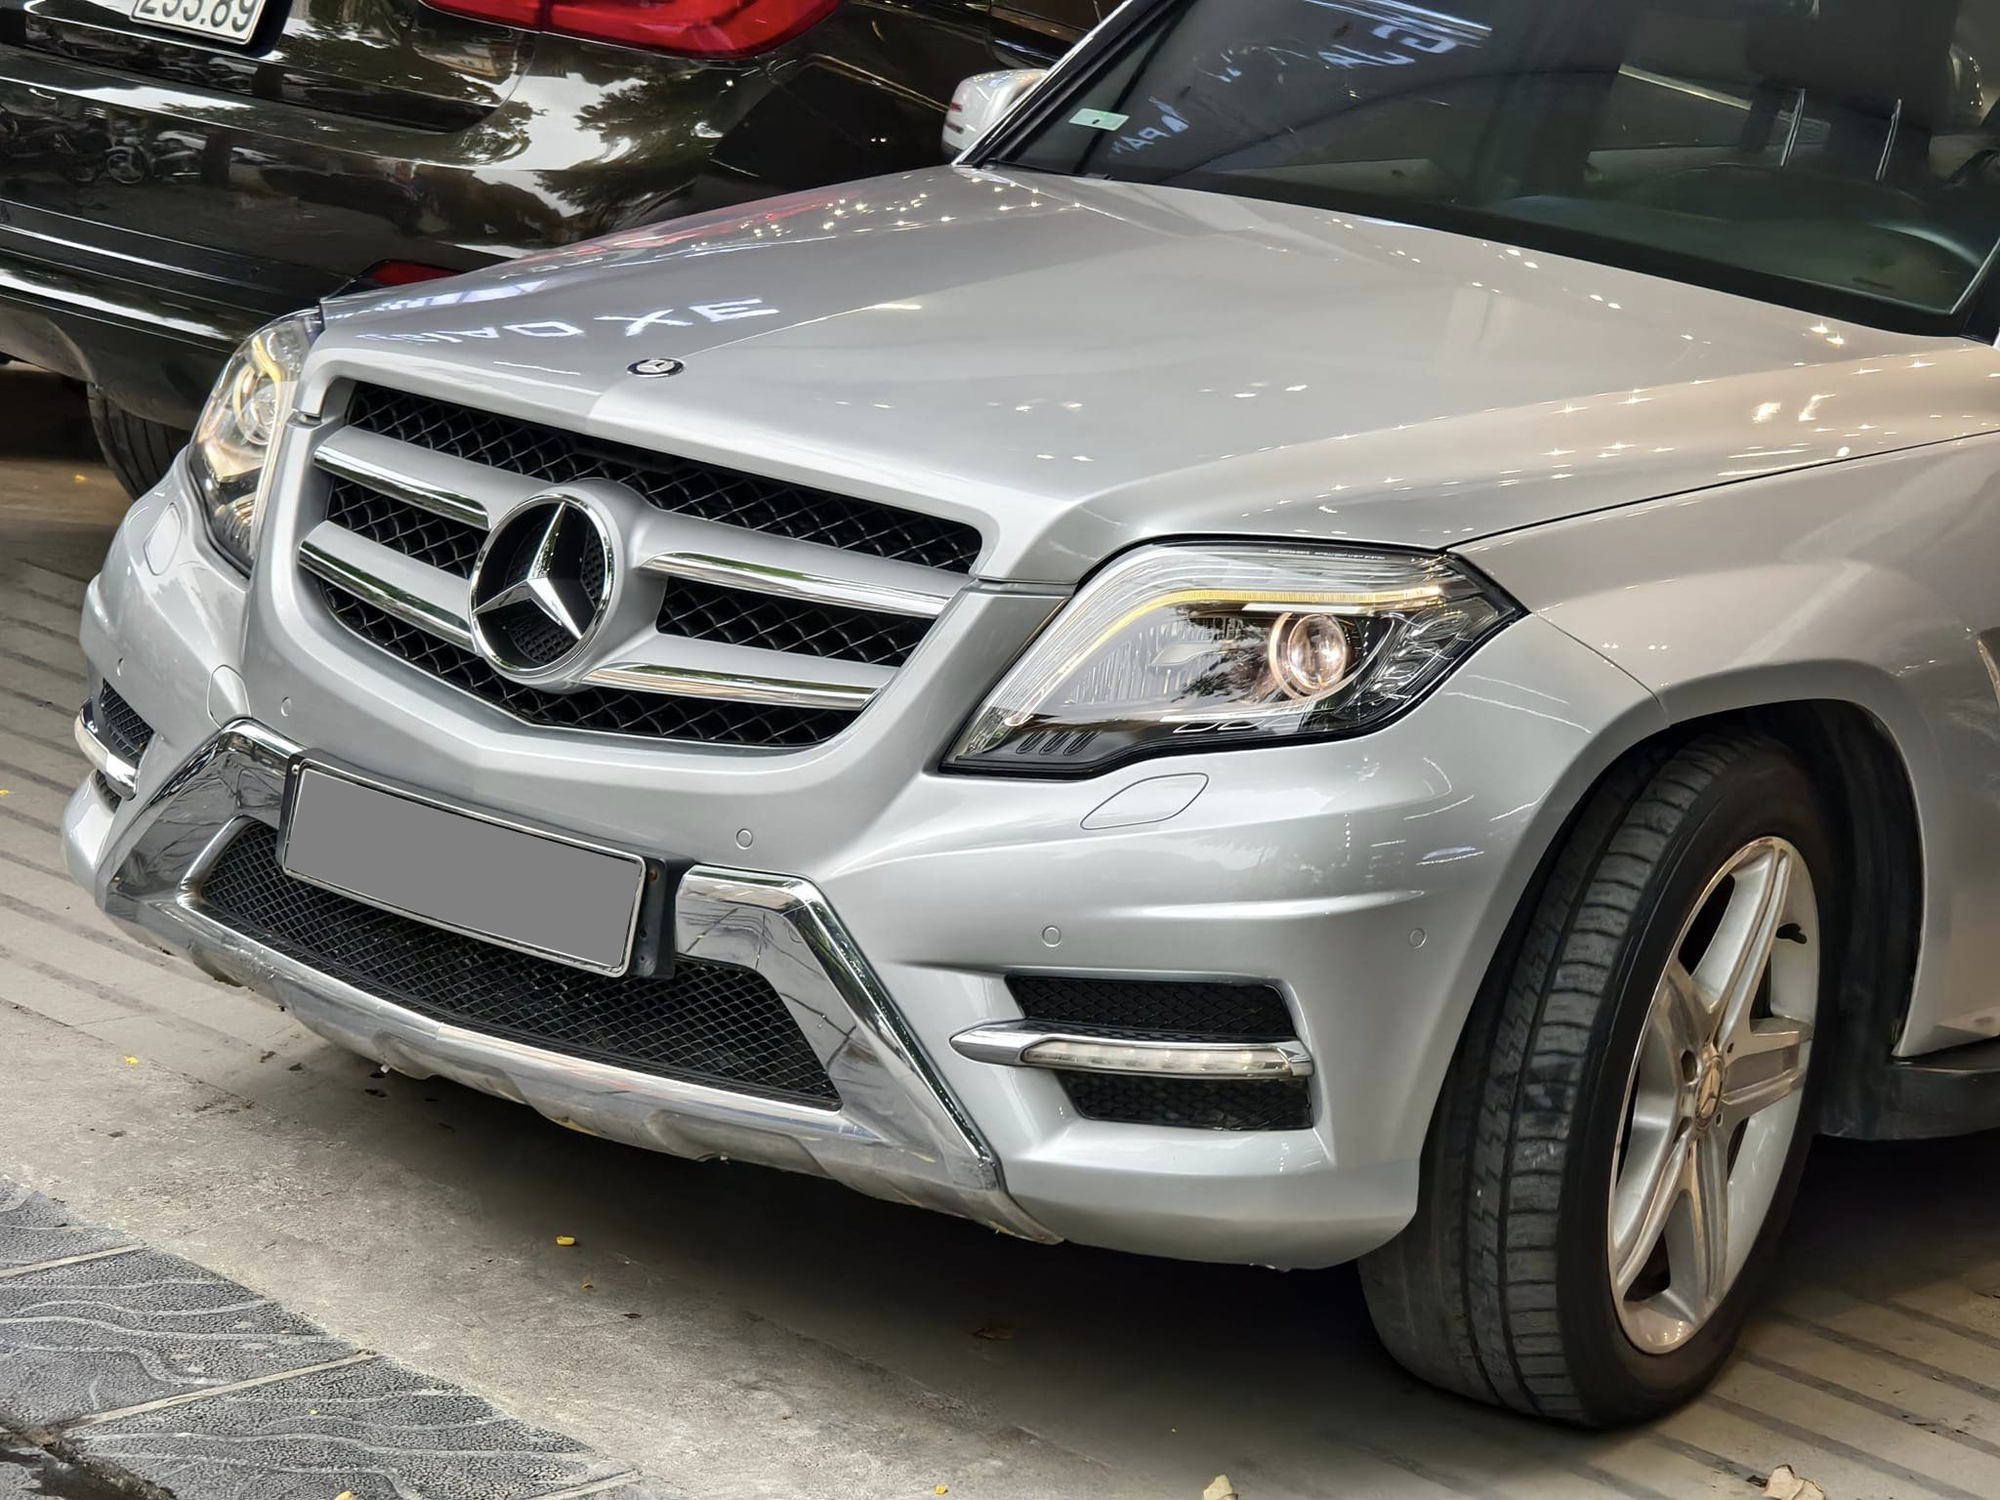 Chưa đến 600 triệu đã có Mercedes-Benz GLK mà 'cả Việt Nam chỉ có hơn 10 chiếc', nhưng đây sẽ là những điều bạn phải đánh đổi